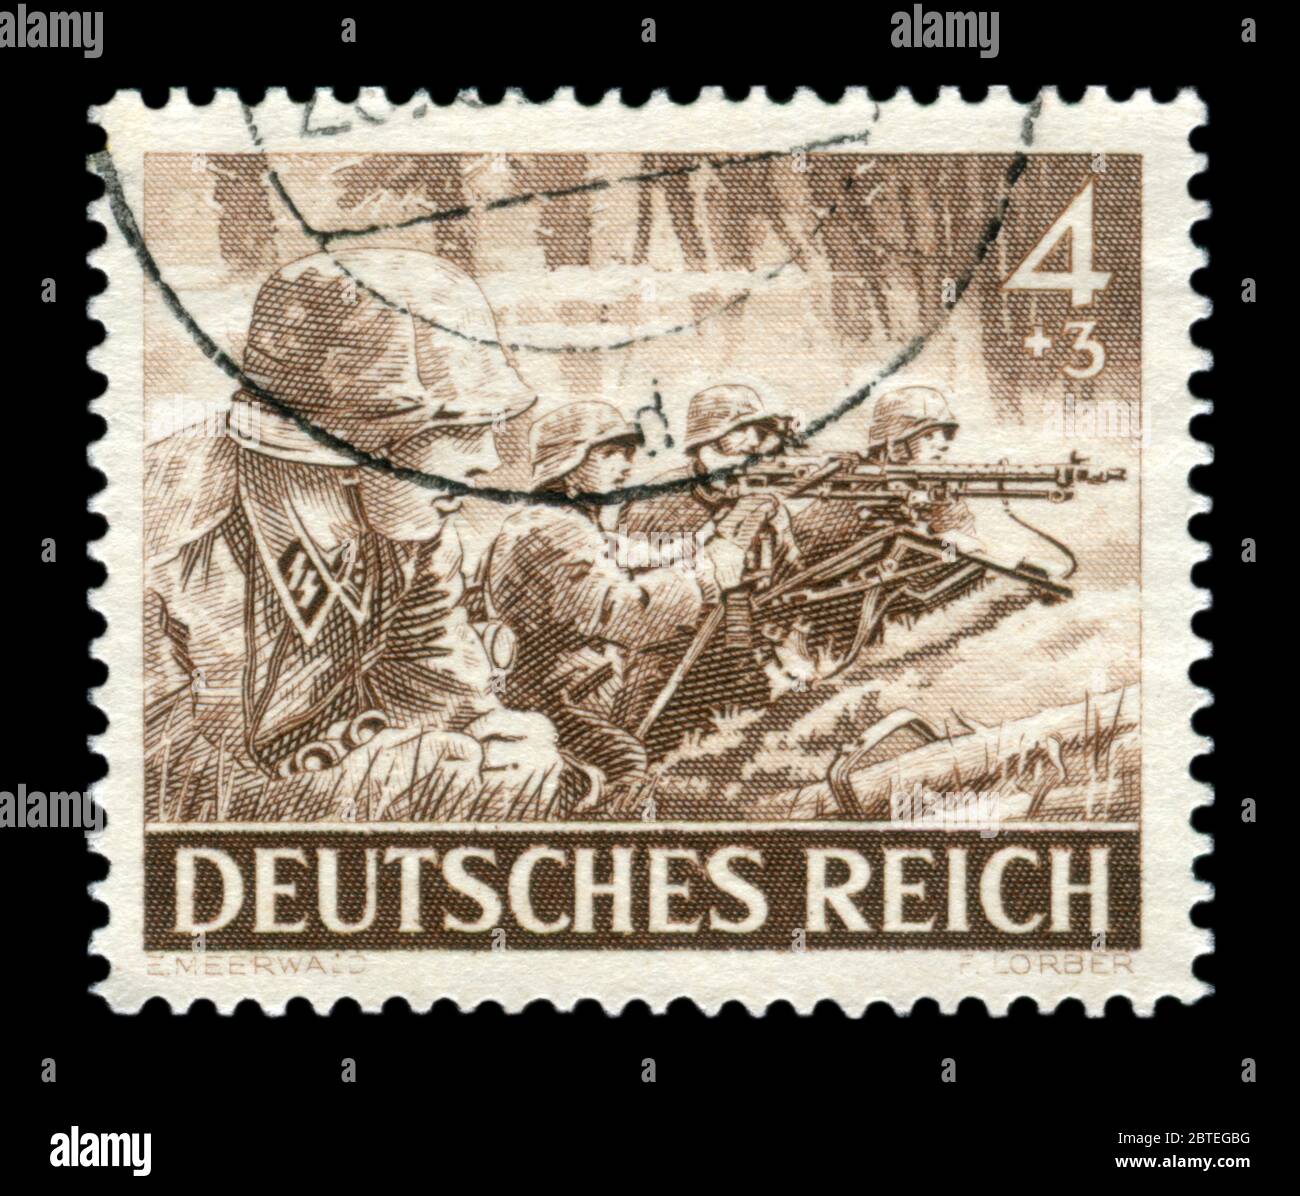 Historique allemand stamp : mitrailleurs de la division d'élite de la Wehrmacht Waffen-SS avec une mitrailleuse mg-34, question de Memorial Day 1943, Allemagne Banque D'Images